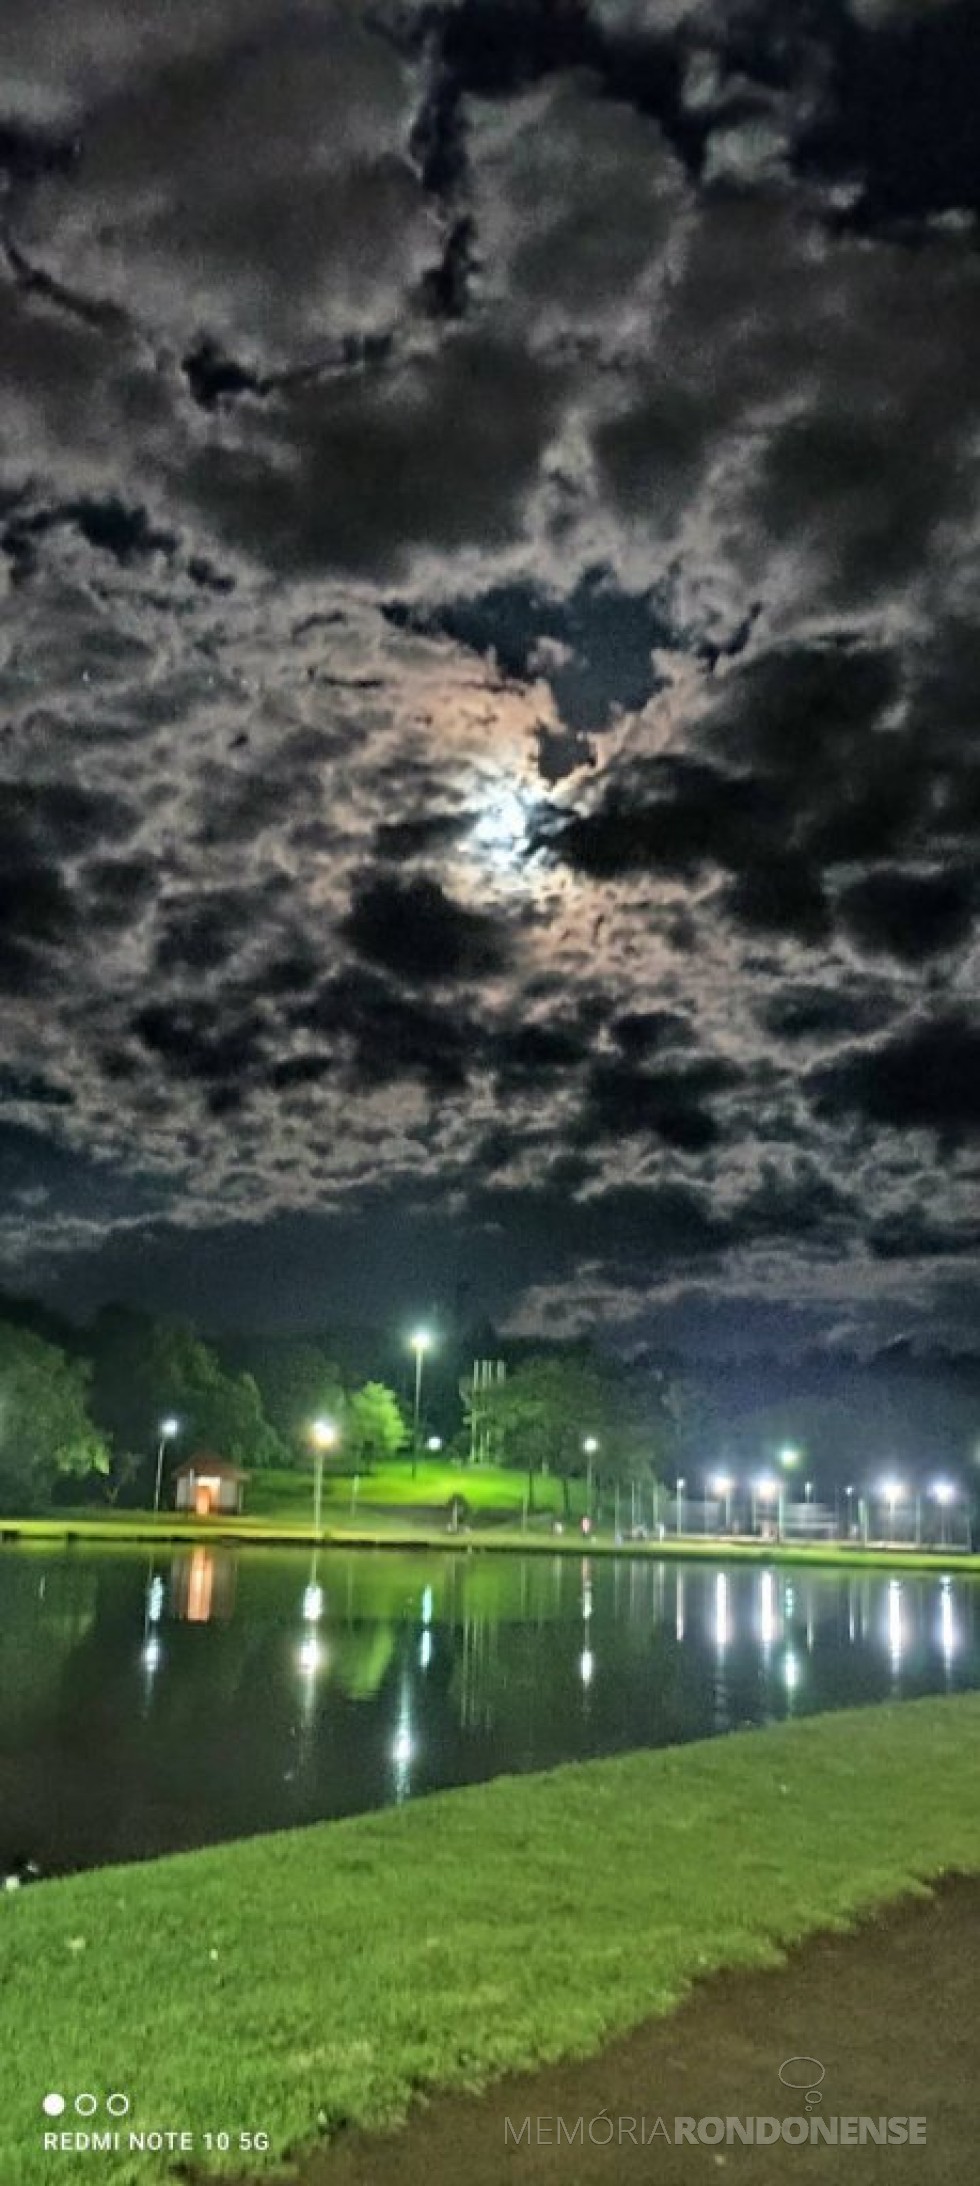 || Noite de Lua Cheia vista em clique feito pelo rondonense Valdemir Sona, a partir do Parque de Lazer Rodolfo Rieger, em 07 de janeiro de 2023. - Foto 22 - 